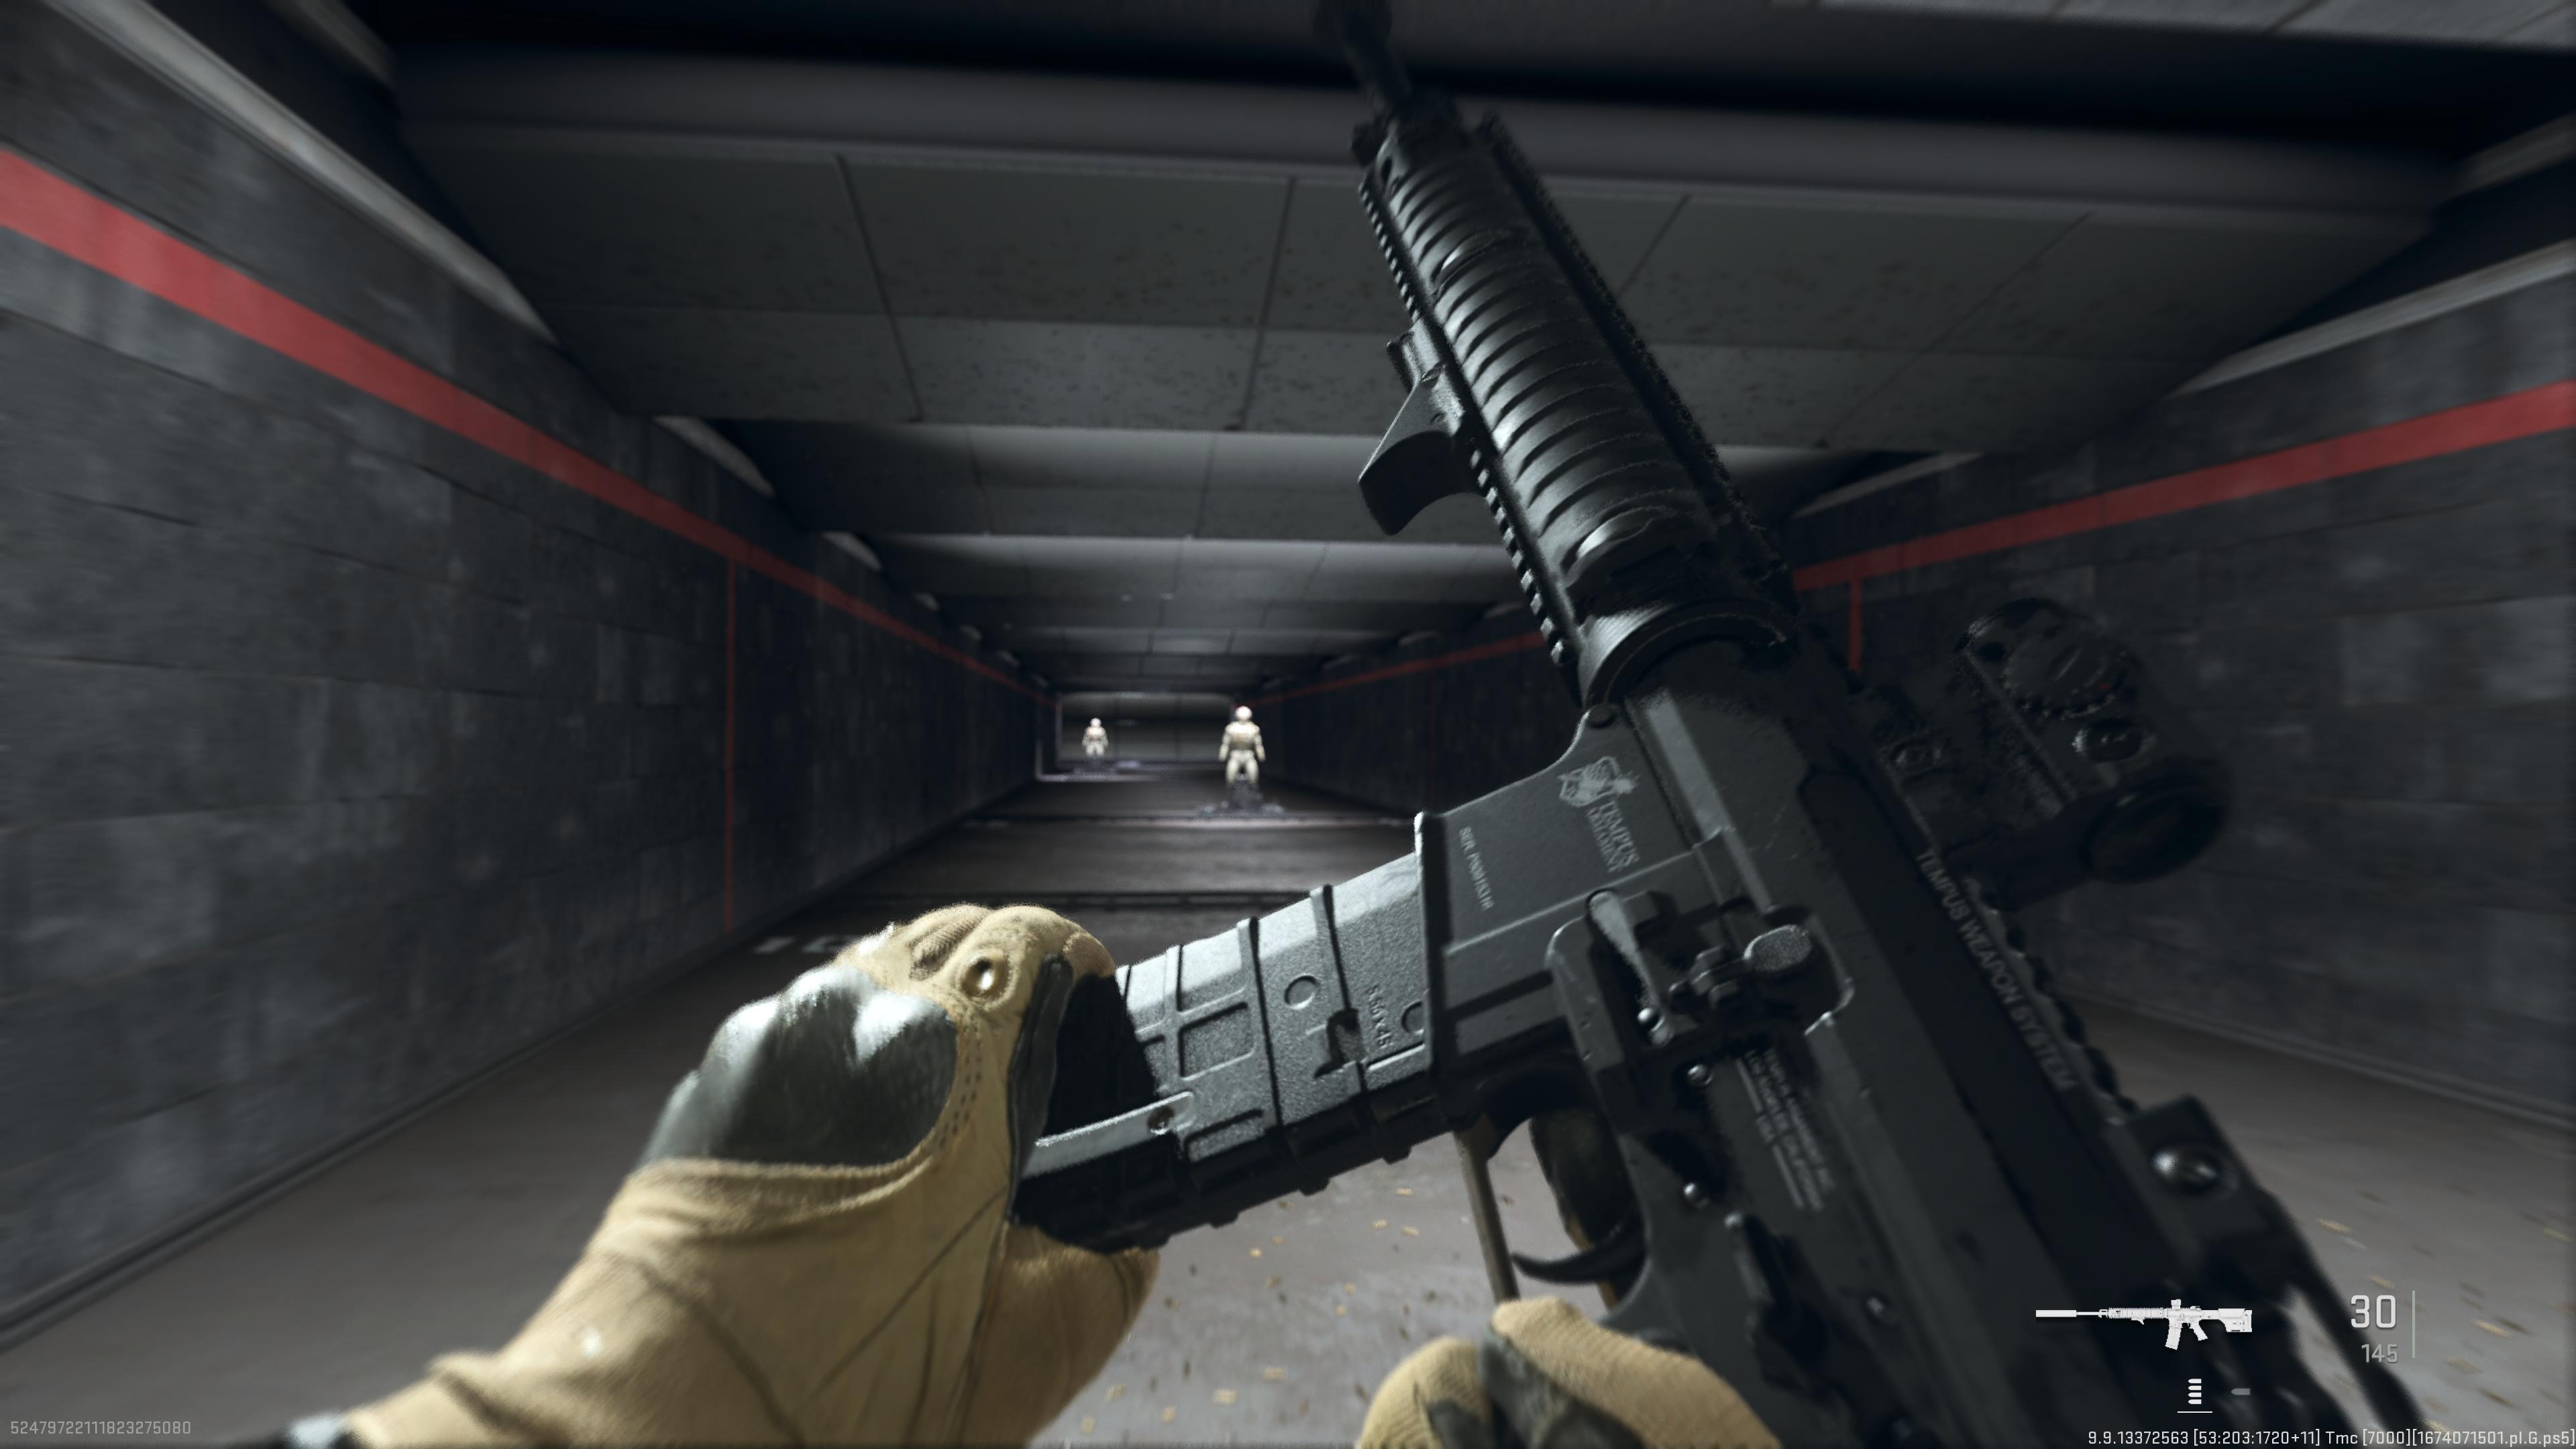 Best M4 loadout in Warzone 2 and Modern Warfare 2 | GamesRadar+